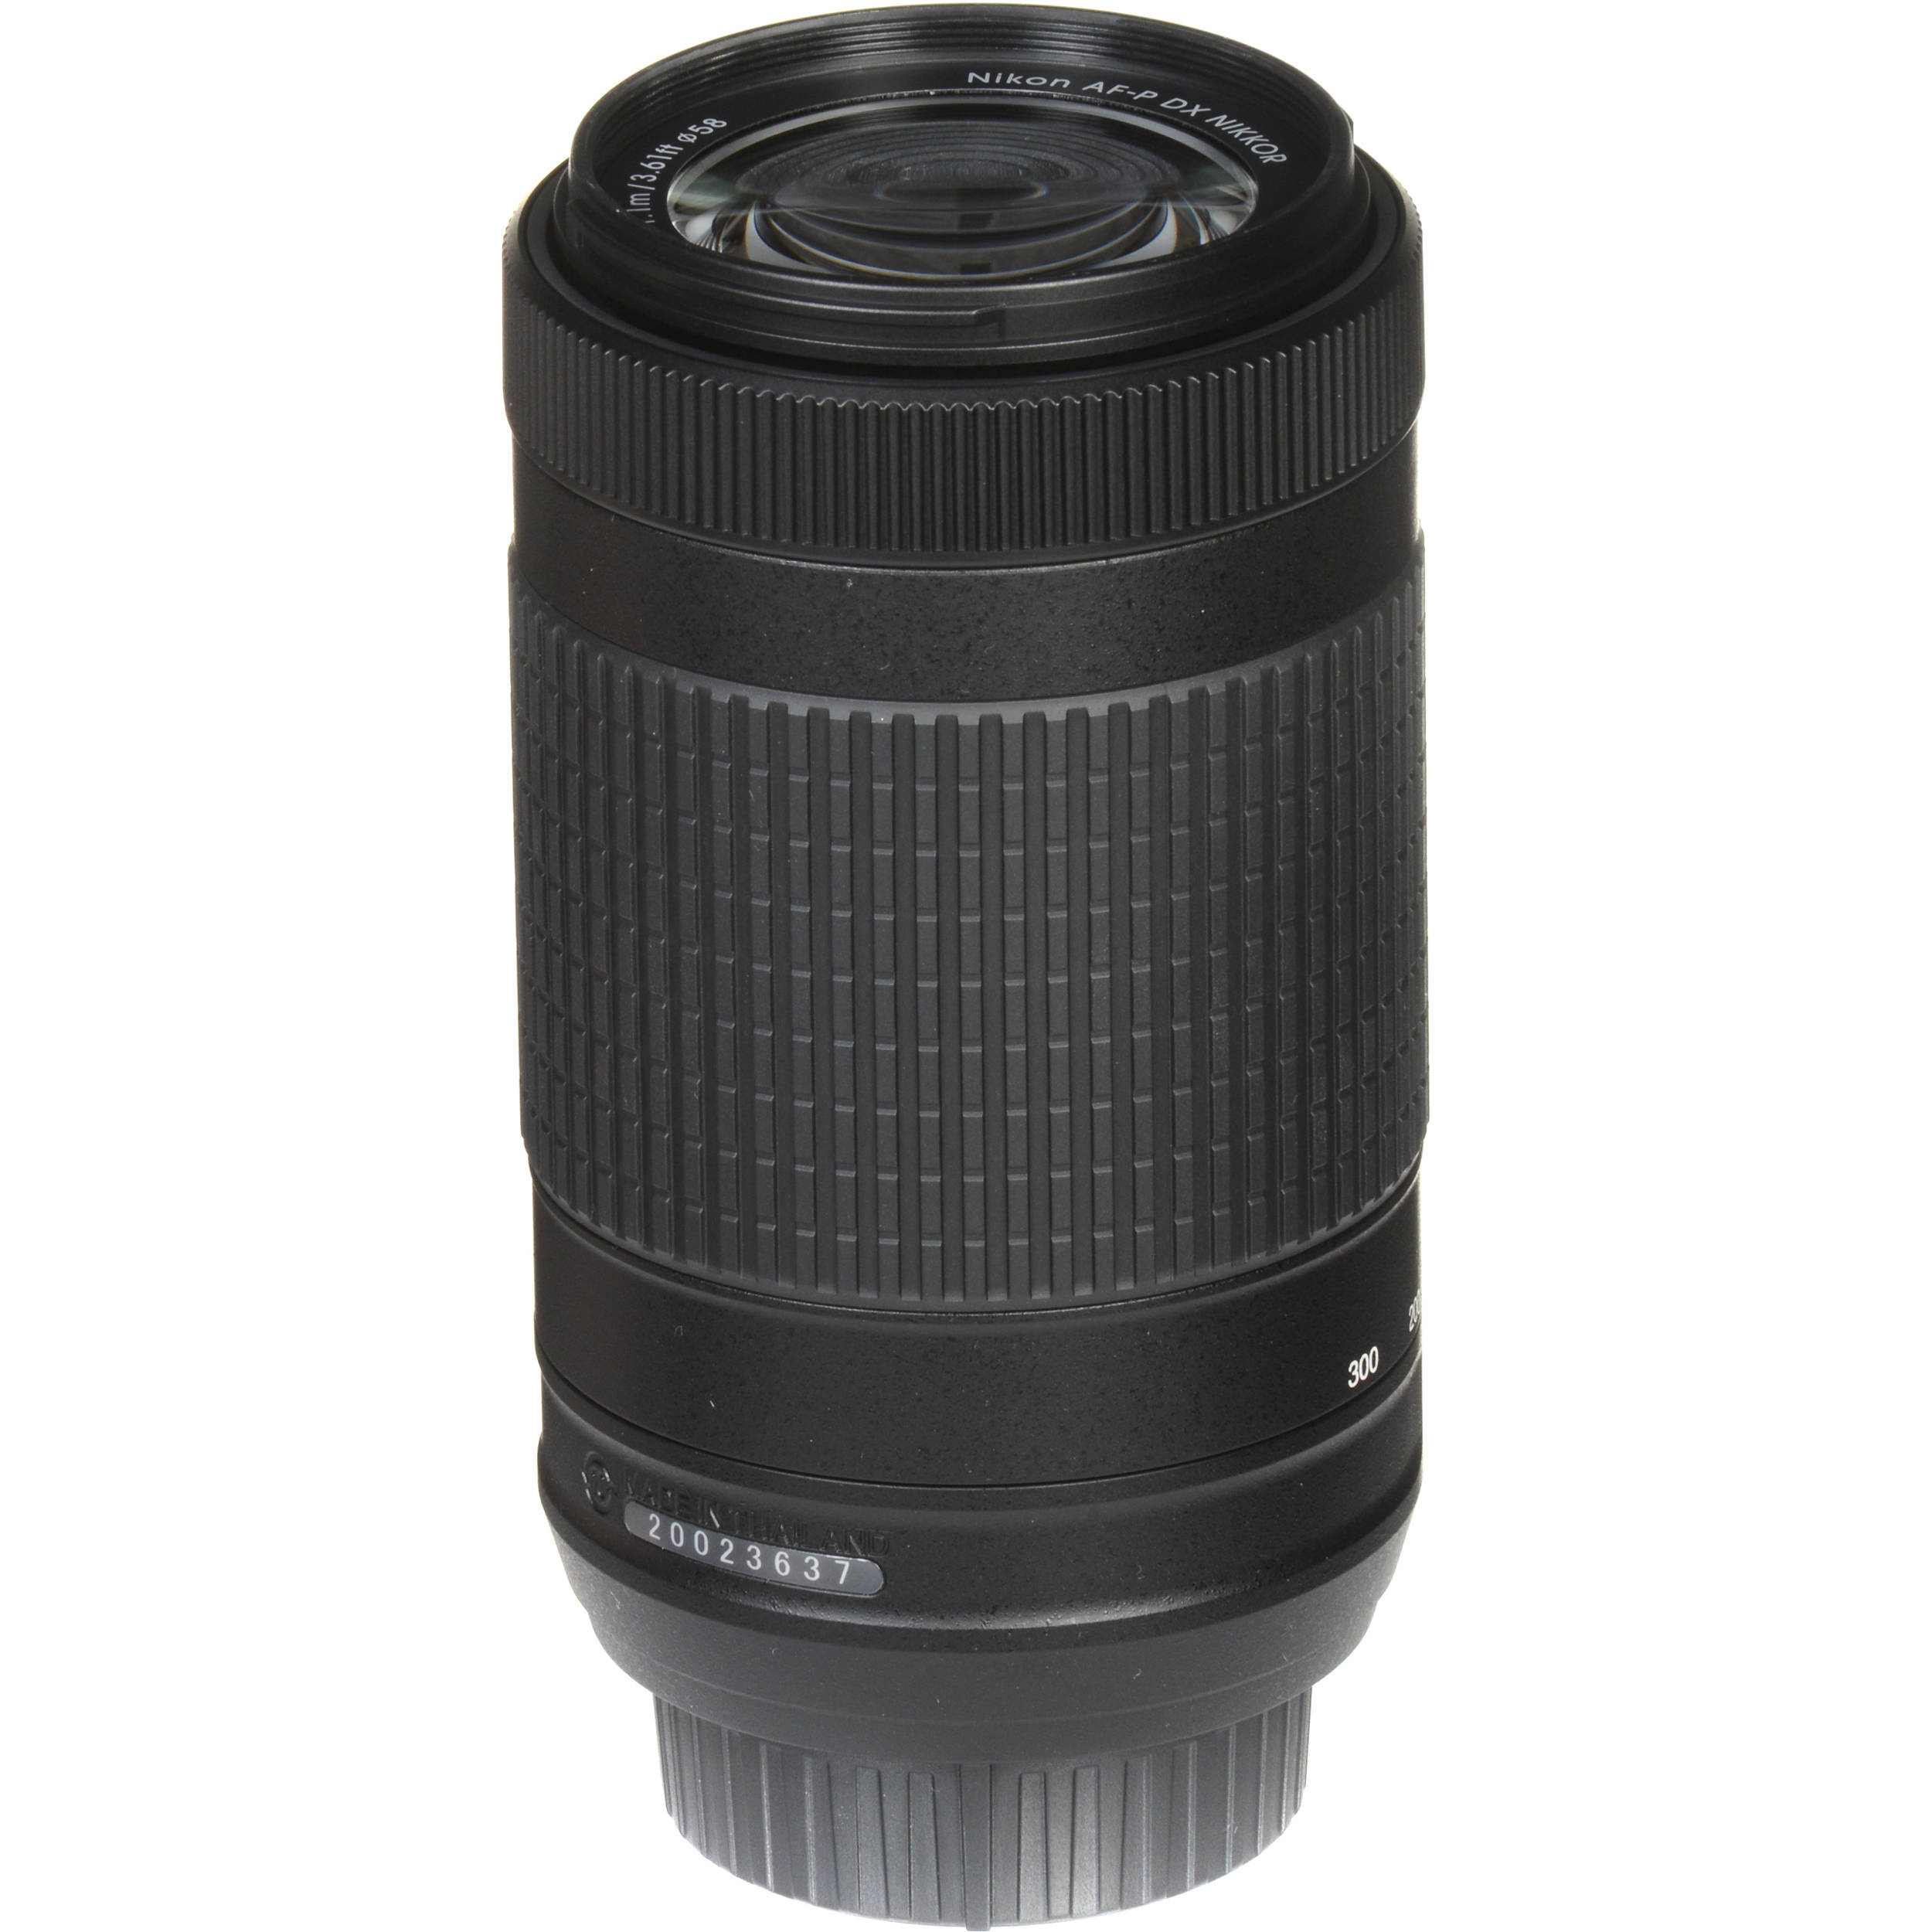 Nikon D70 Lens Compatibility Chart